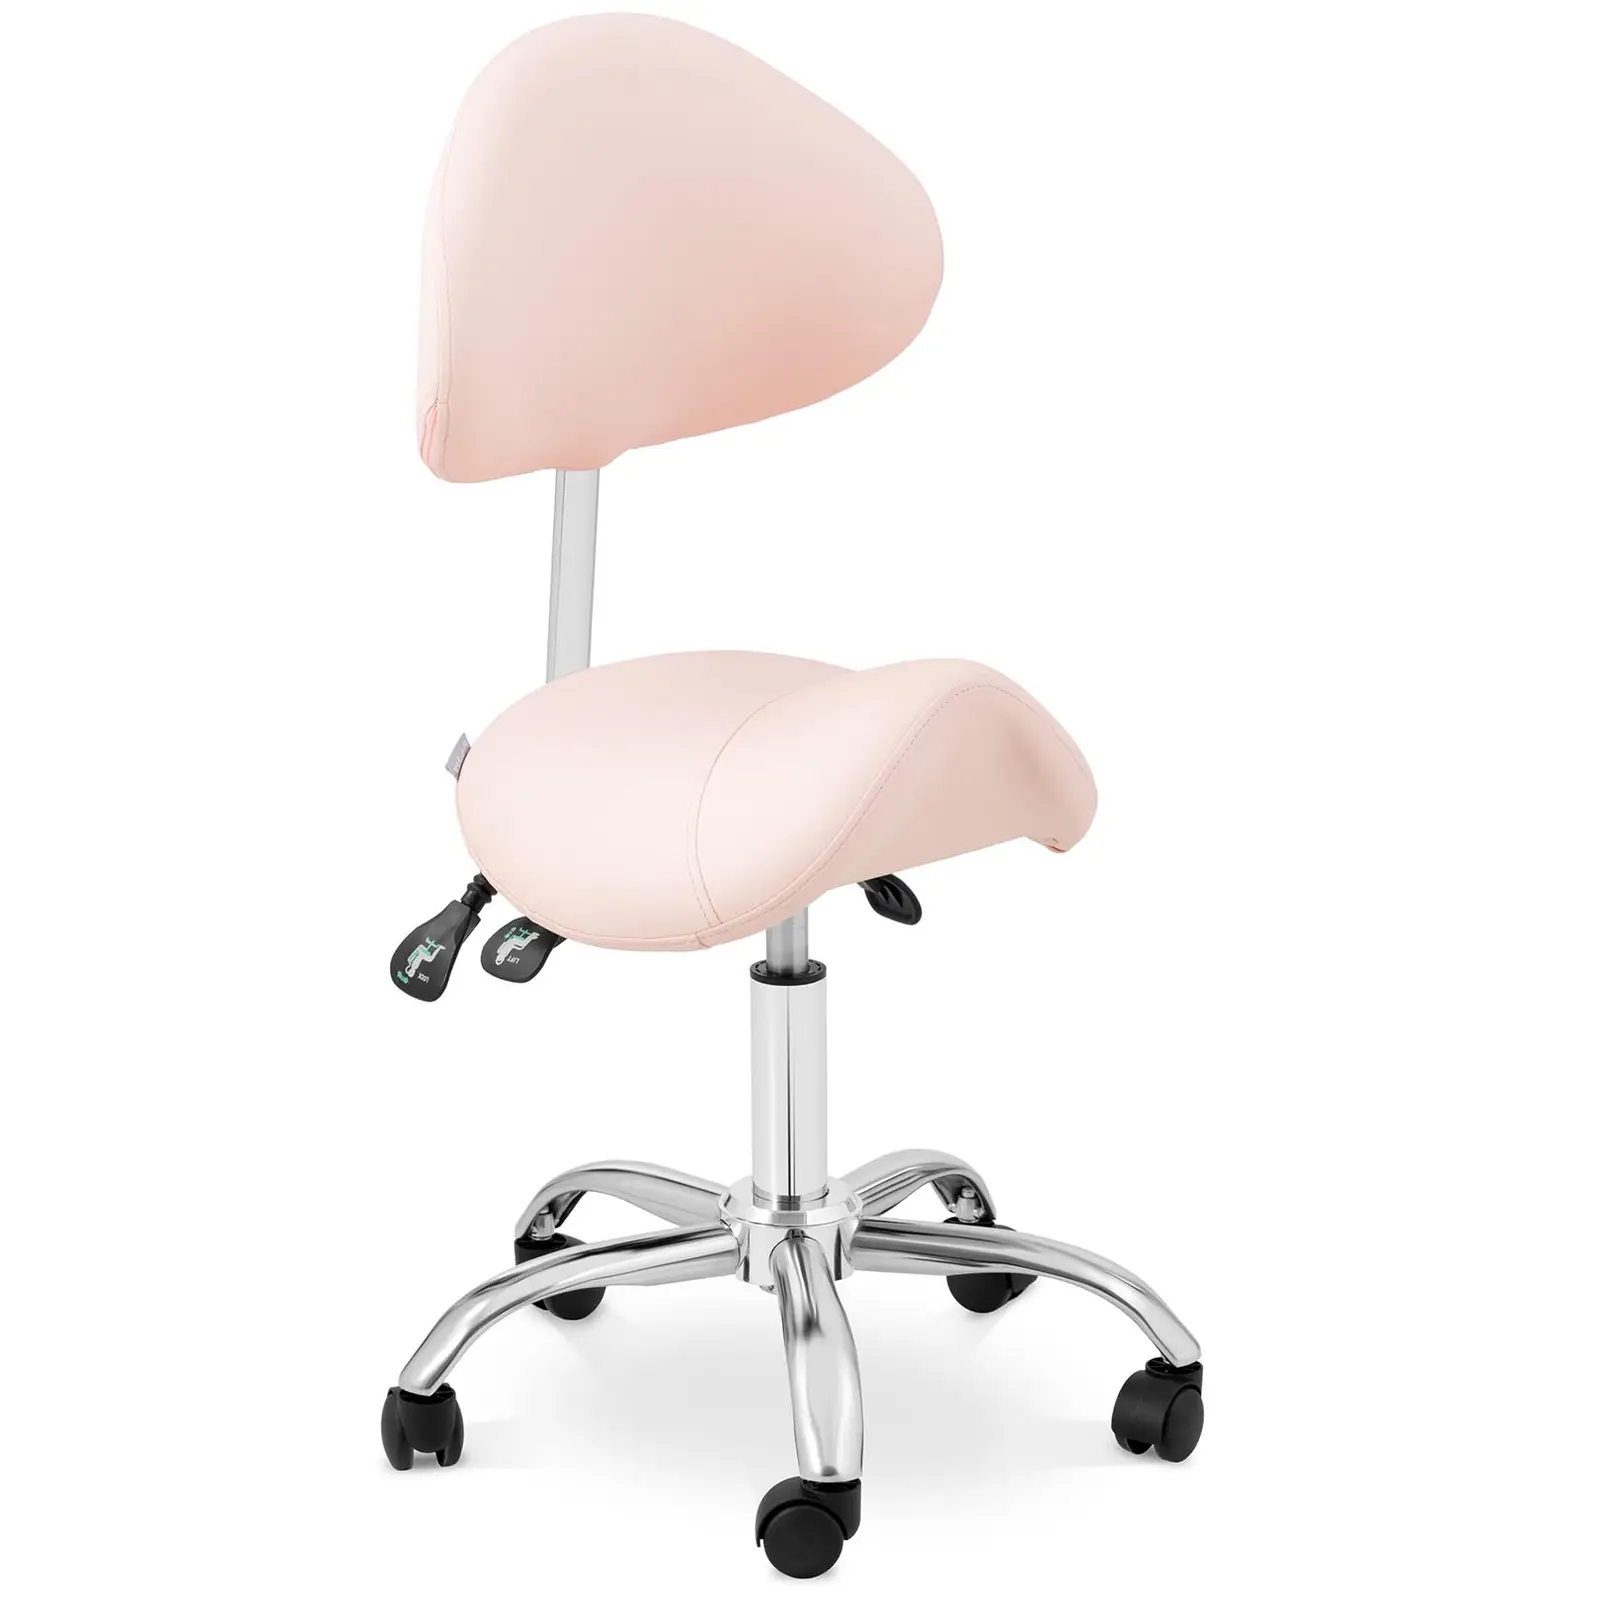 Sedlasti stol - nastavljiva višina naslona in sedeža - 55 - 69 cm - 150 kg - roza, srebrna